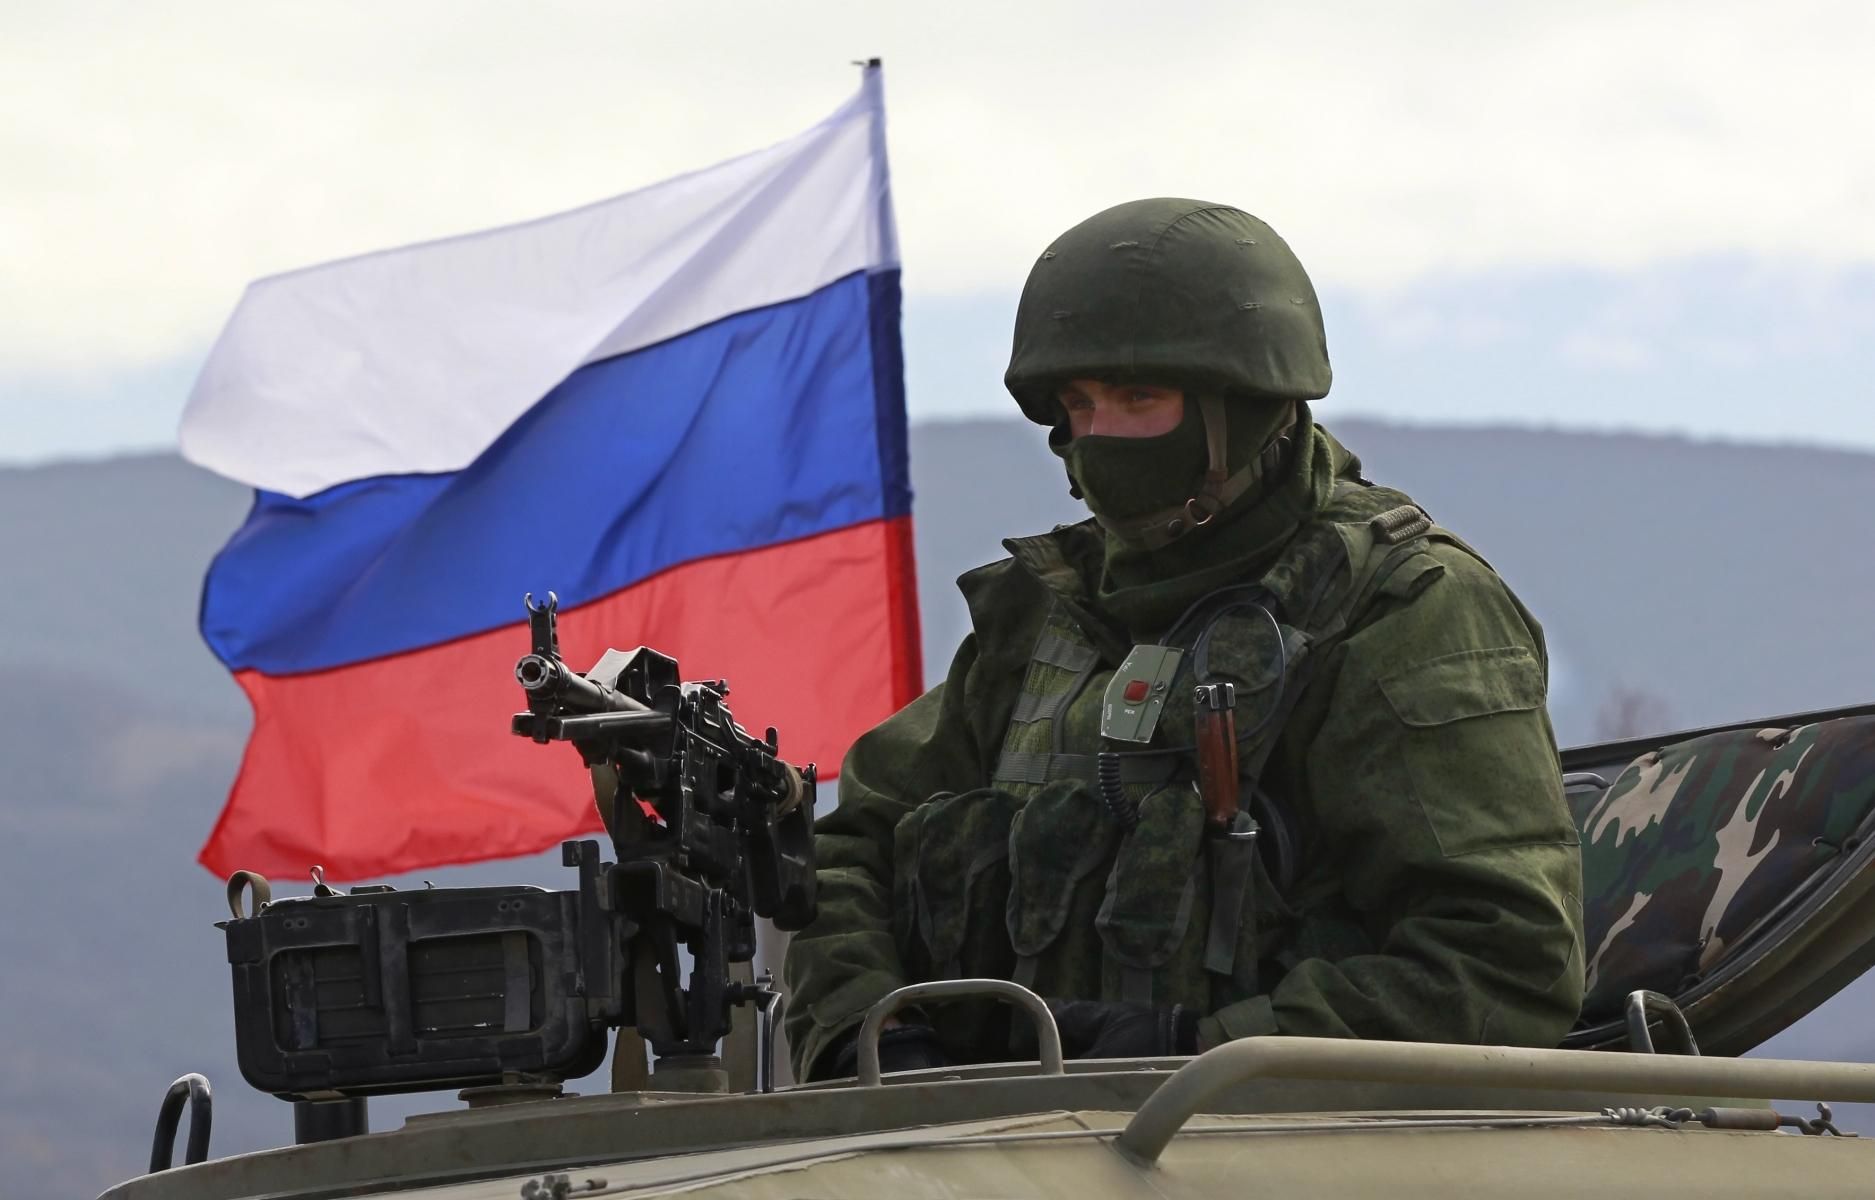  Россия поставляет оружие на Донбасс: заявление Эмине Джапаров